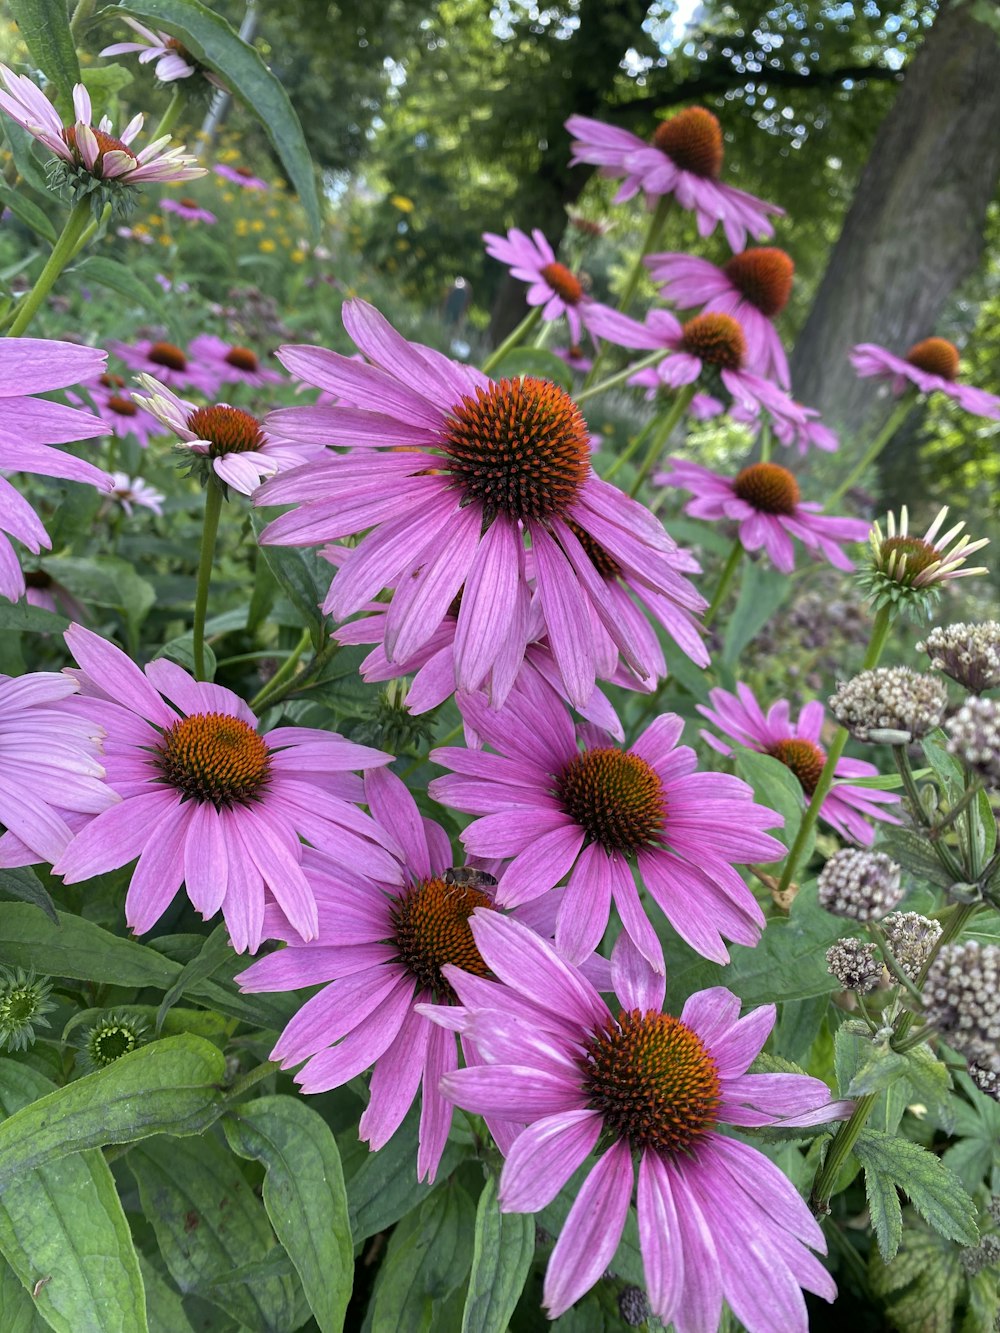 a bunch of purple flowers in a garden